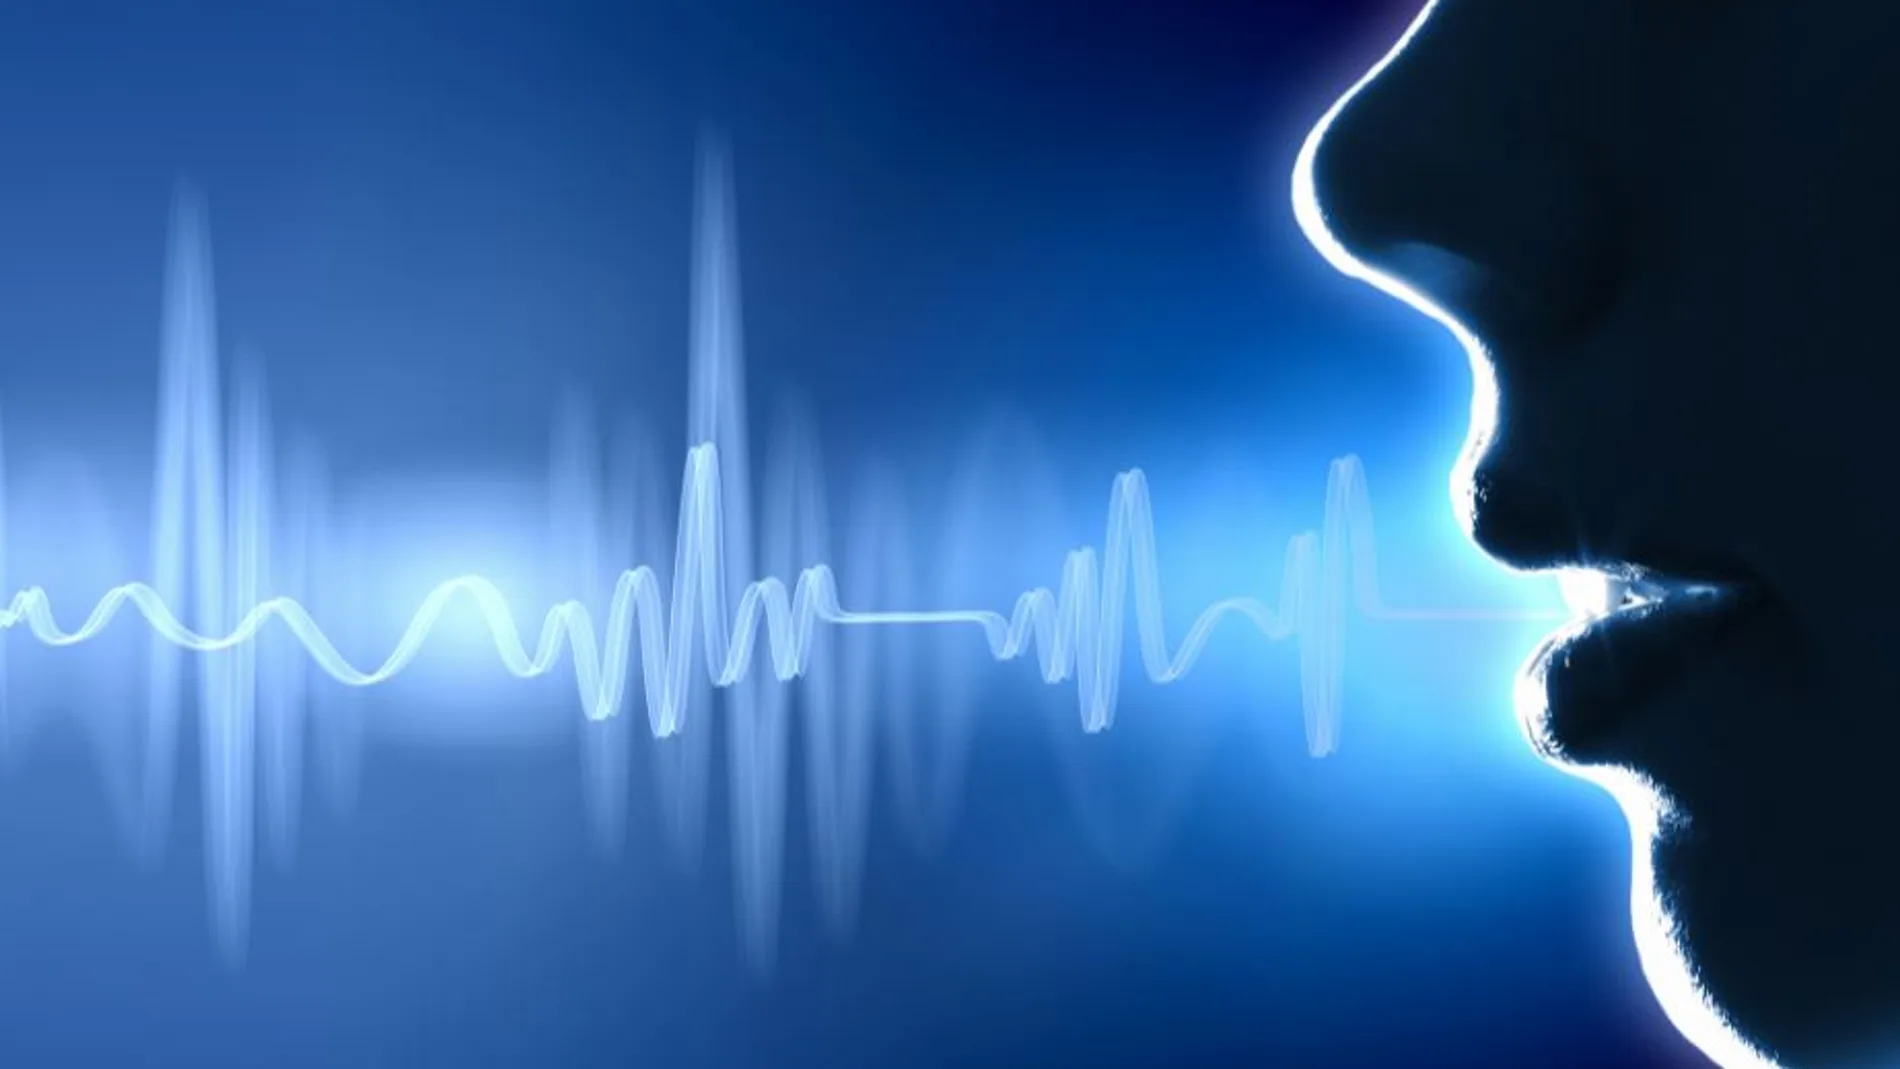 Las voces graves son percibidas más dominantes y seductoras | Fuente: Biometrix Vox